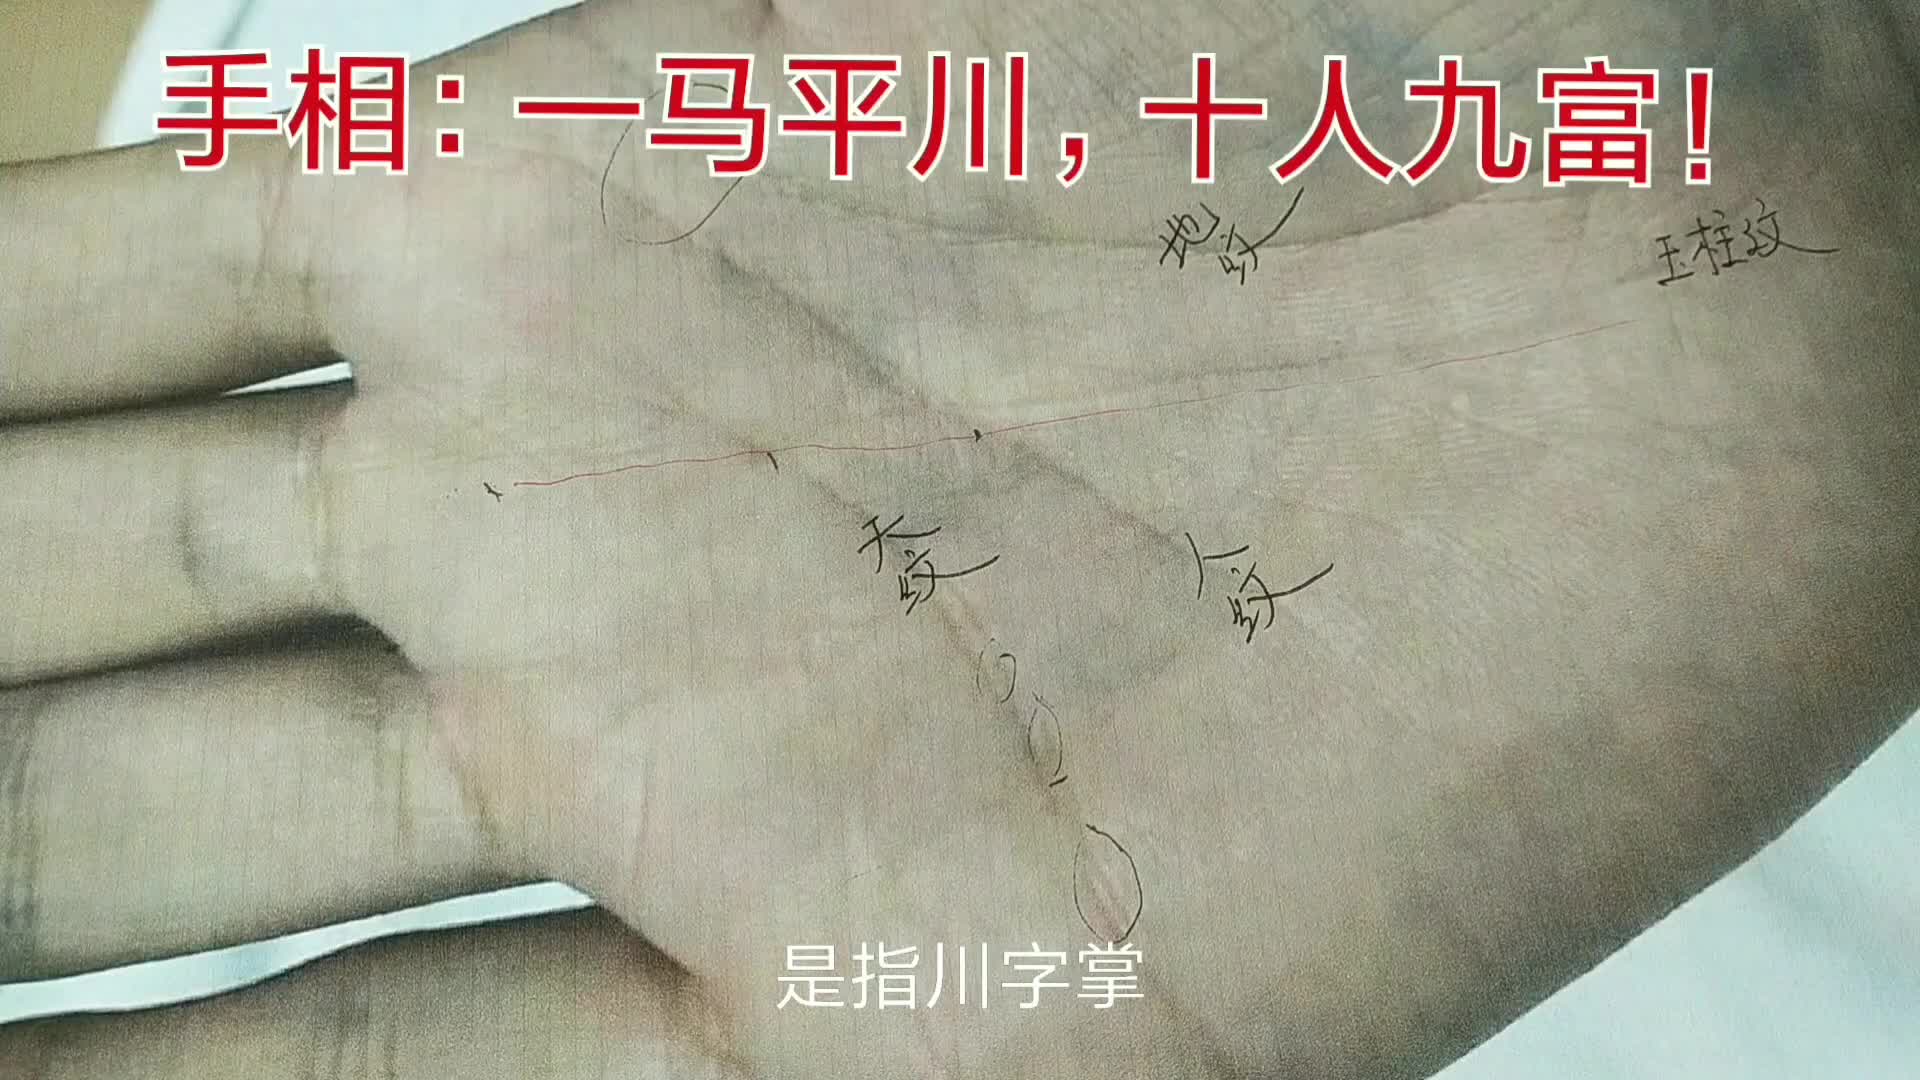 眉间川字纹图片-图库-五毛网